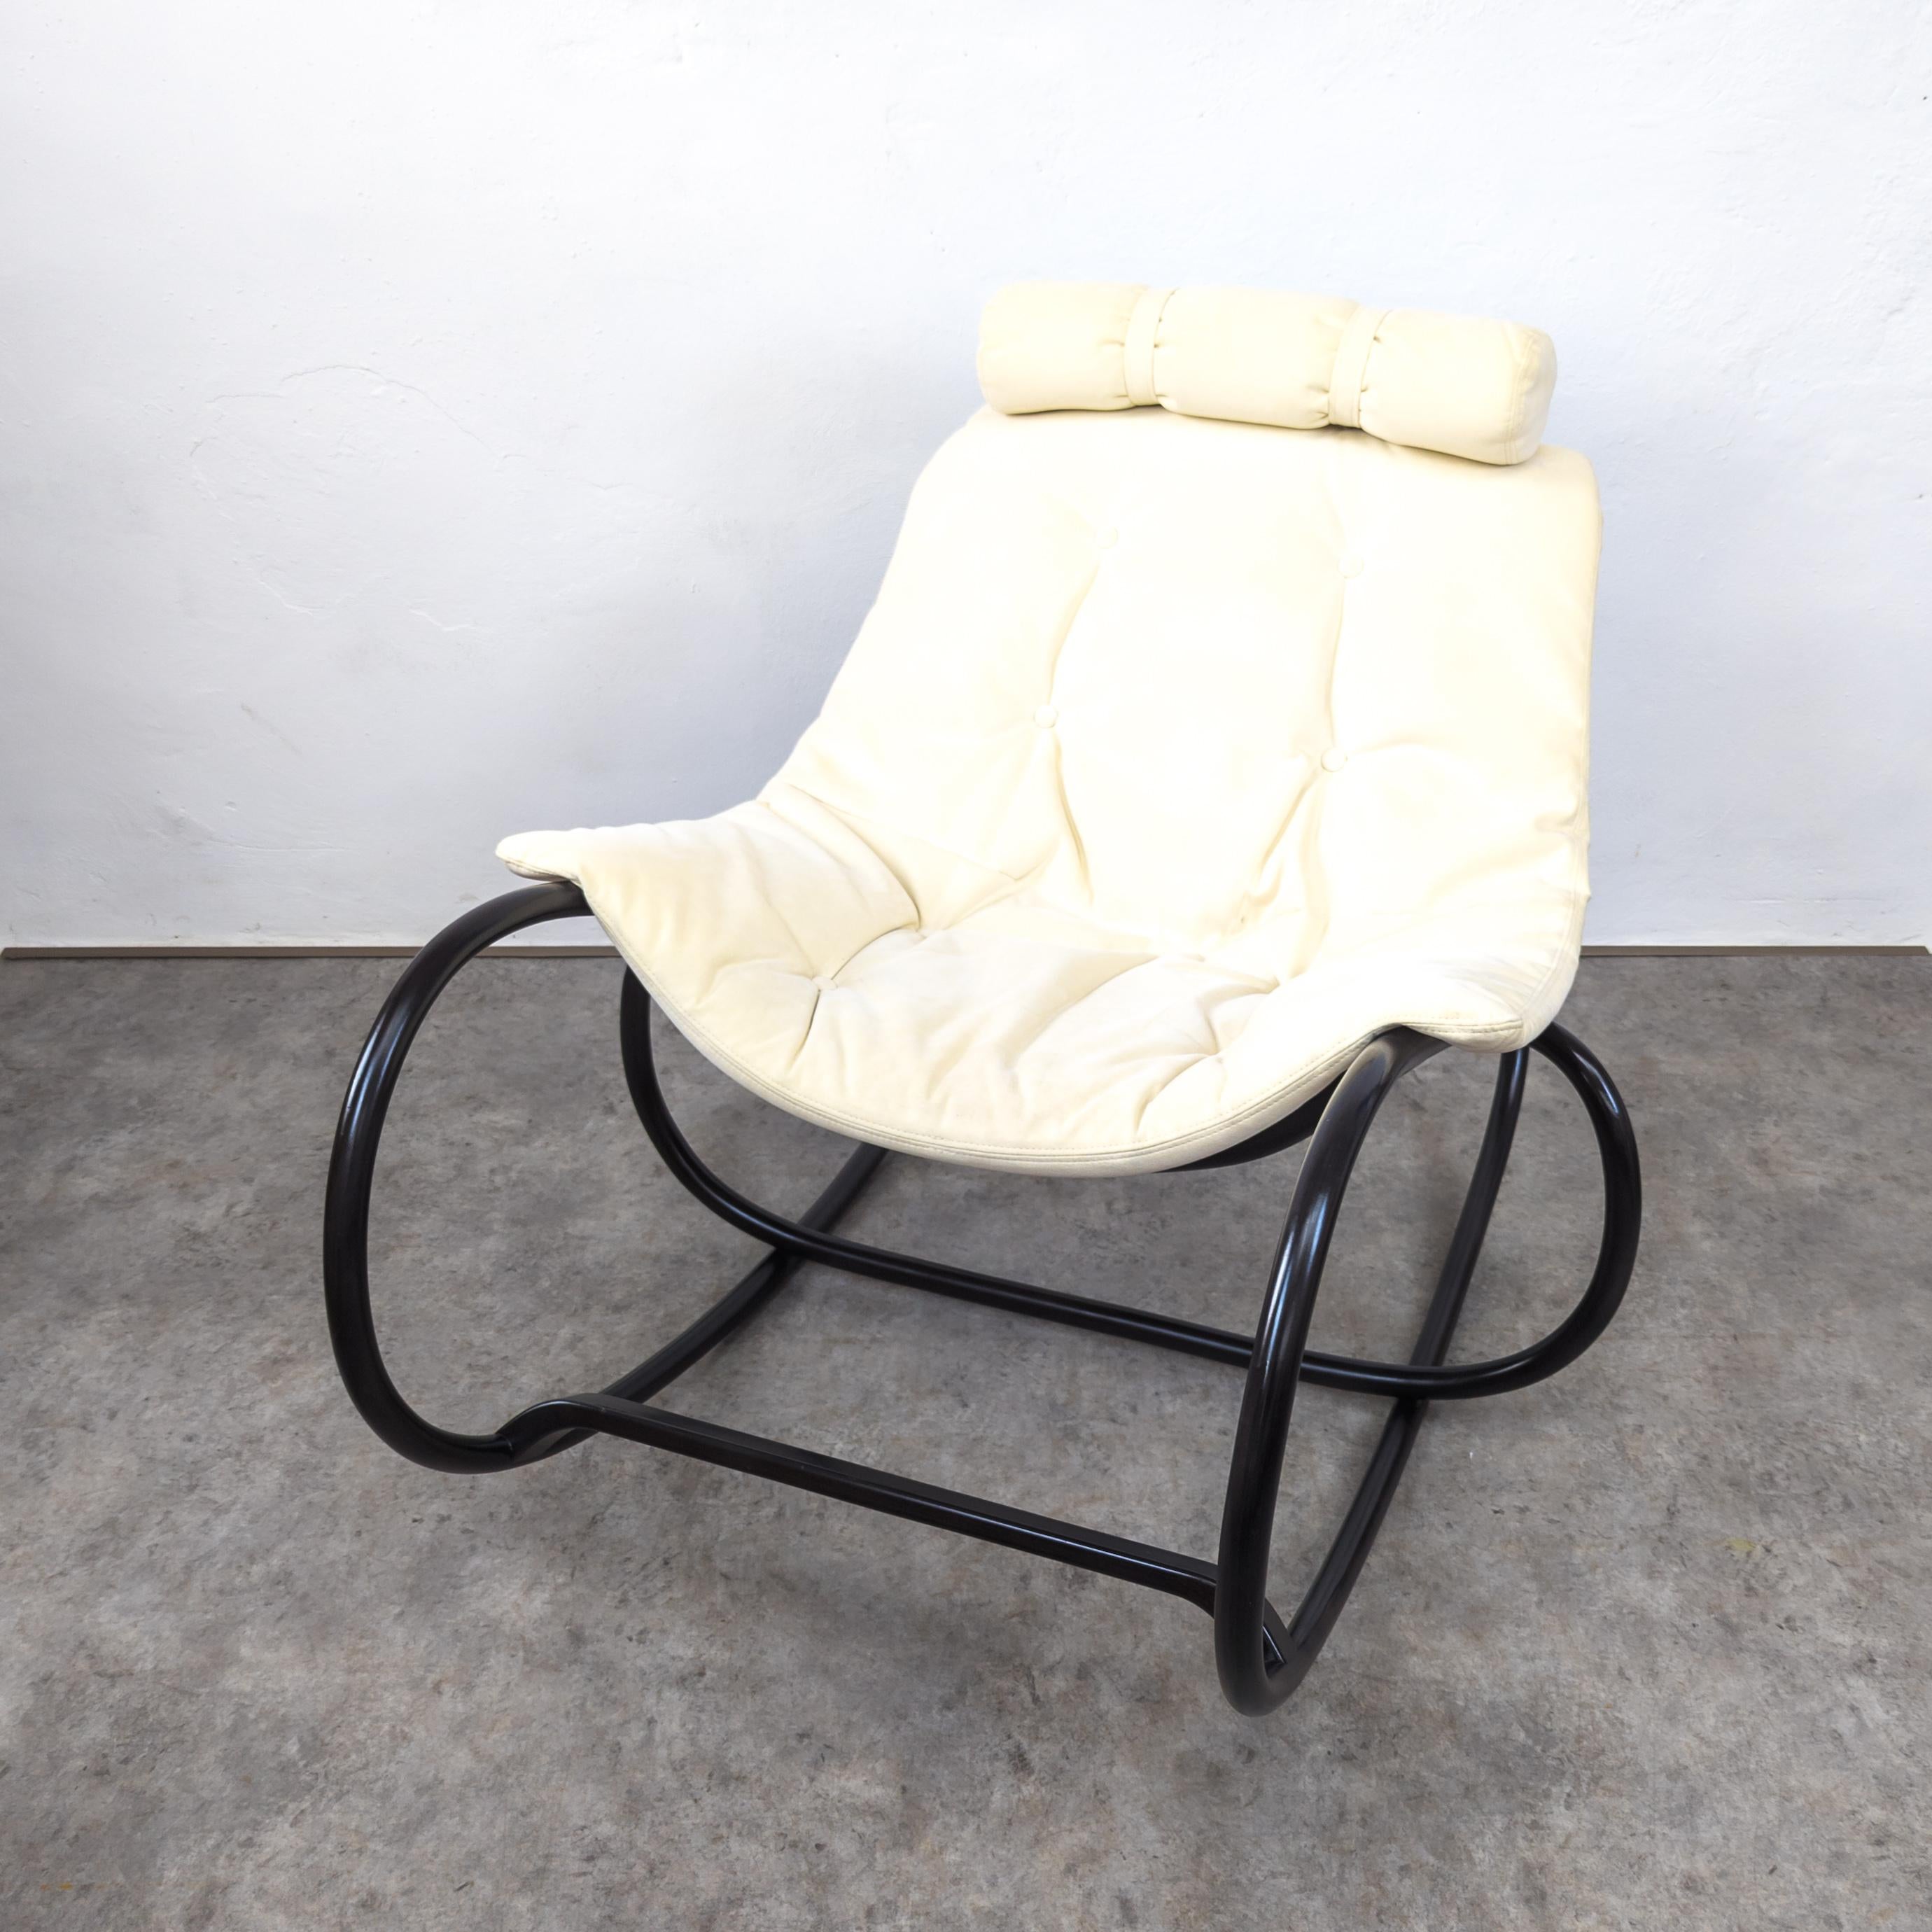 Wave a été conçu pour le 150e anniversaire de l'entreprise de cintrage de meubles de Bystřice pod Hostýnem. Il s'agit d'une refonte du modèle classique de Dondolo. 
Il ne s'agit pas seulement d'un confortable rocking-chair ou d'une chaise longue,